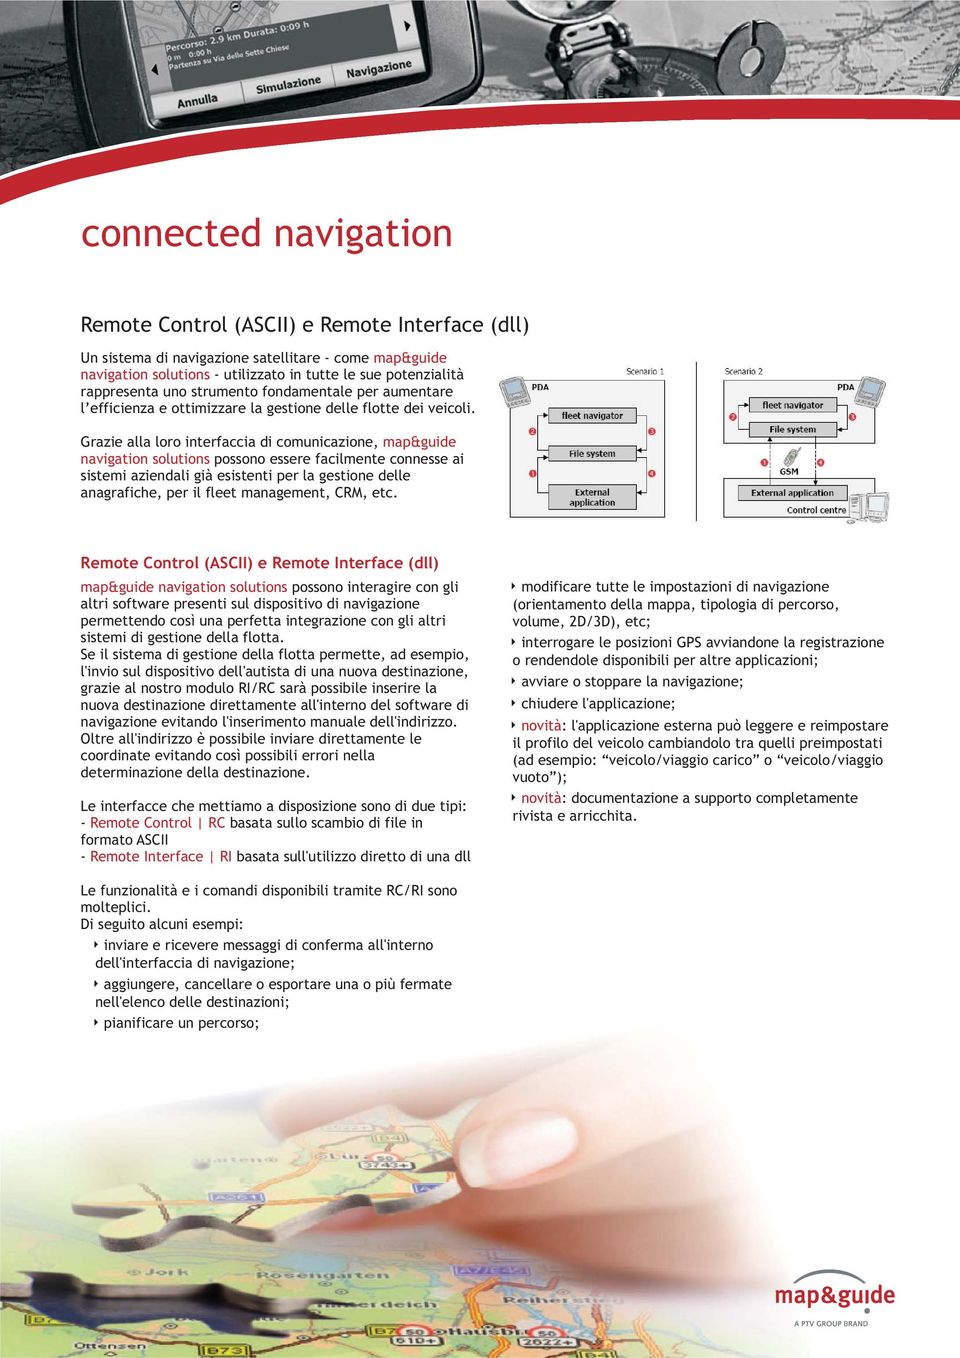 Grazie alla loro interfaccia di comunicazione, map&guide navigation solutions possono essere facilmente connesse ai sistemi aziendali già esistenti per la gestione delle anagrafiche, per il fleet